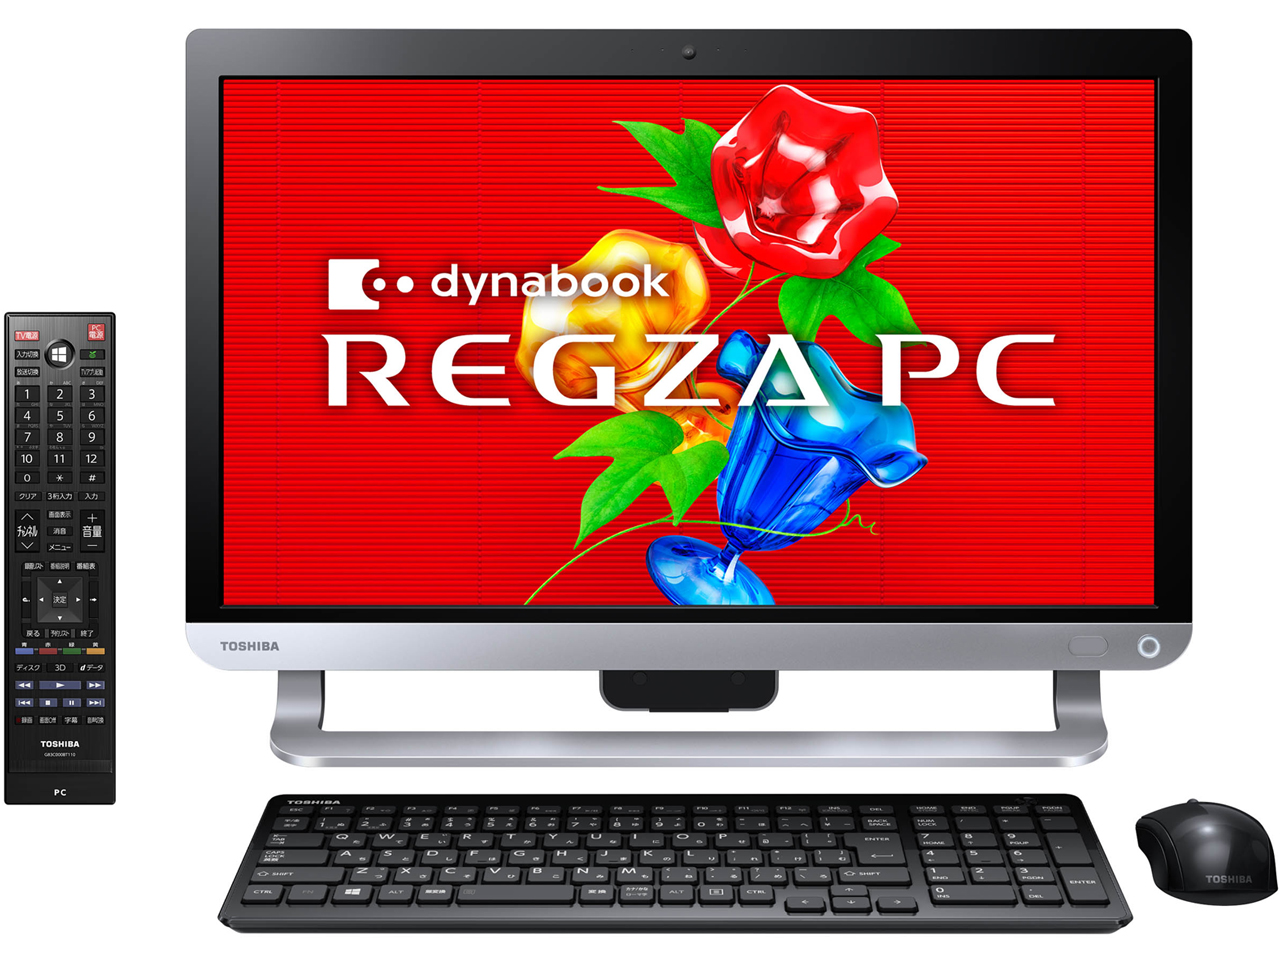 REGZA PC D71